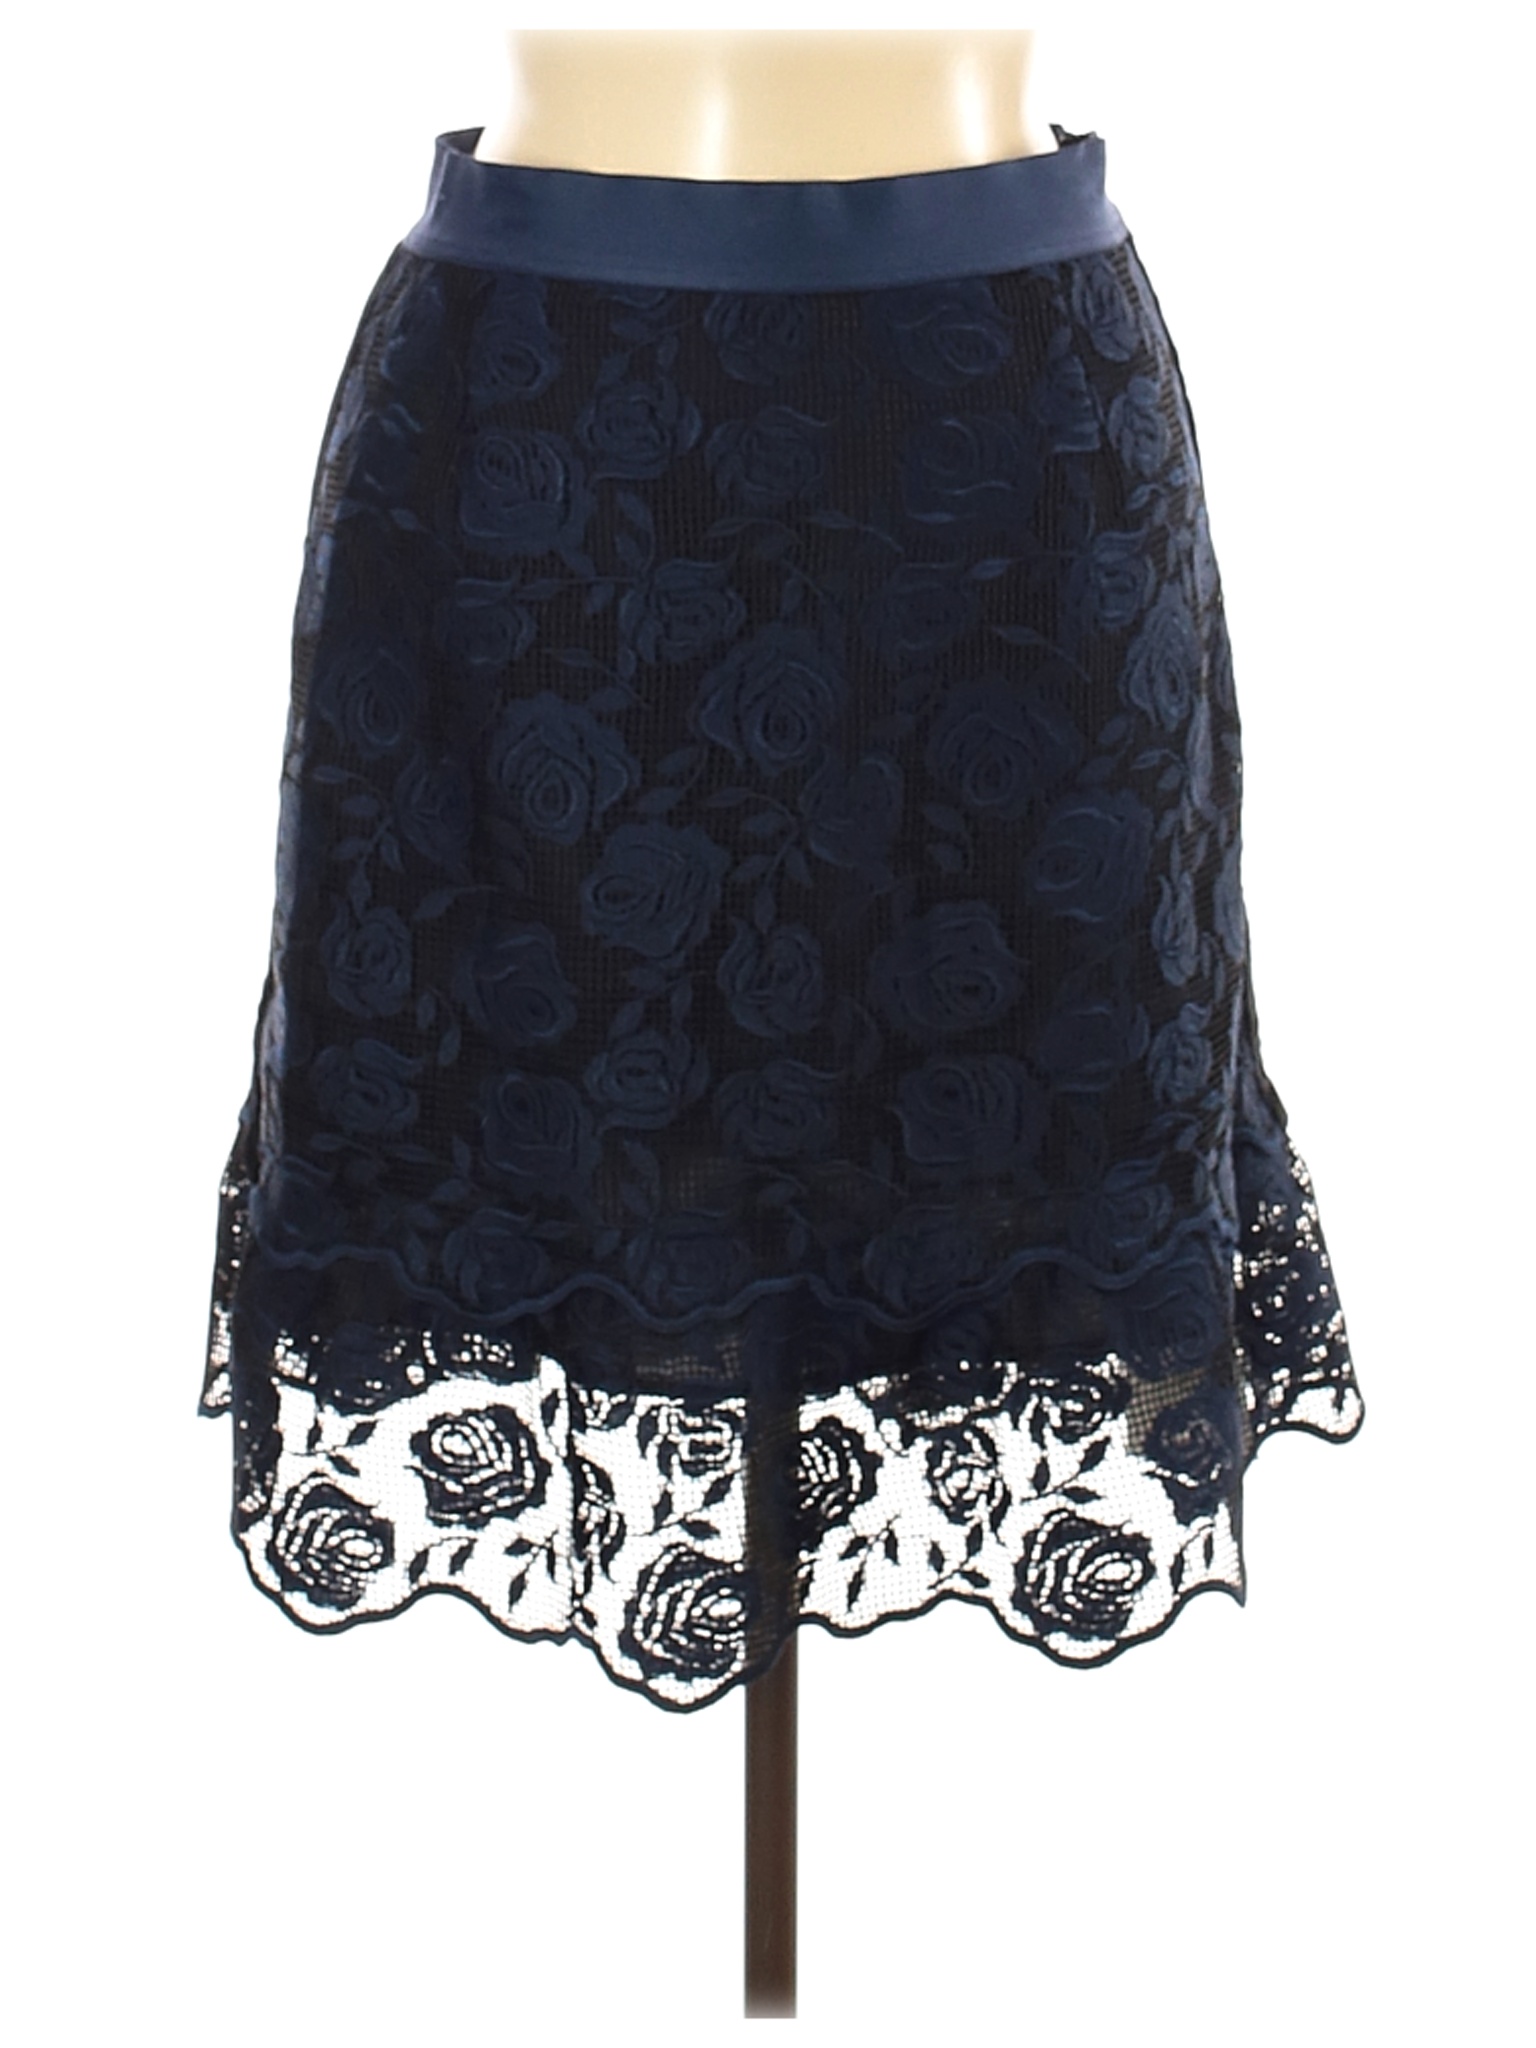 NWT Sandro Women Blue Casual Skirt M | eBay